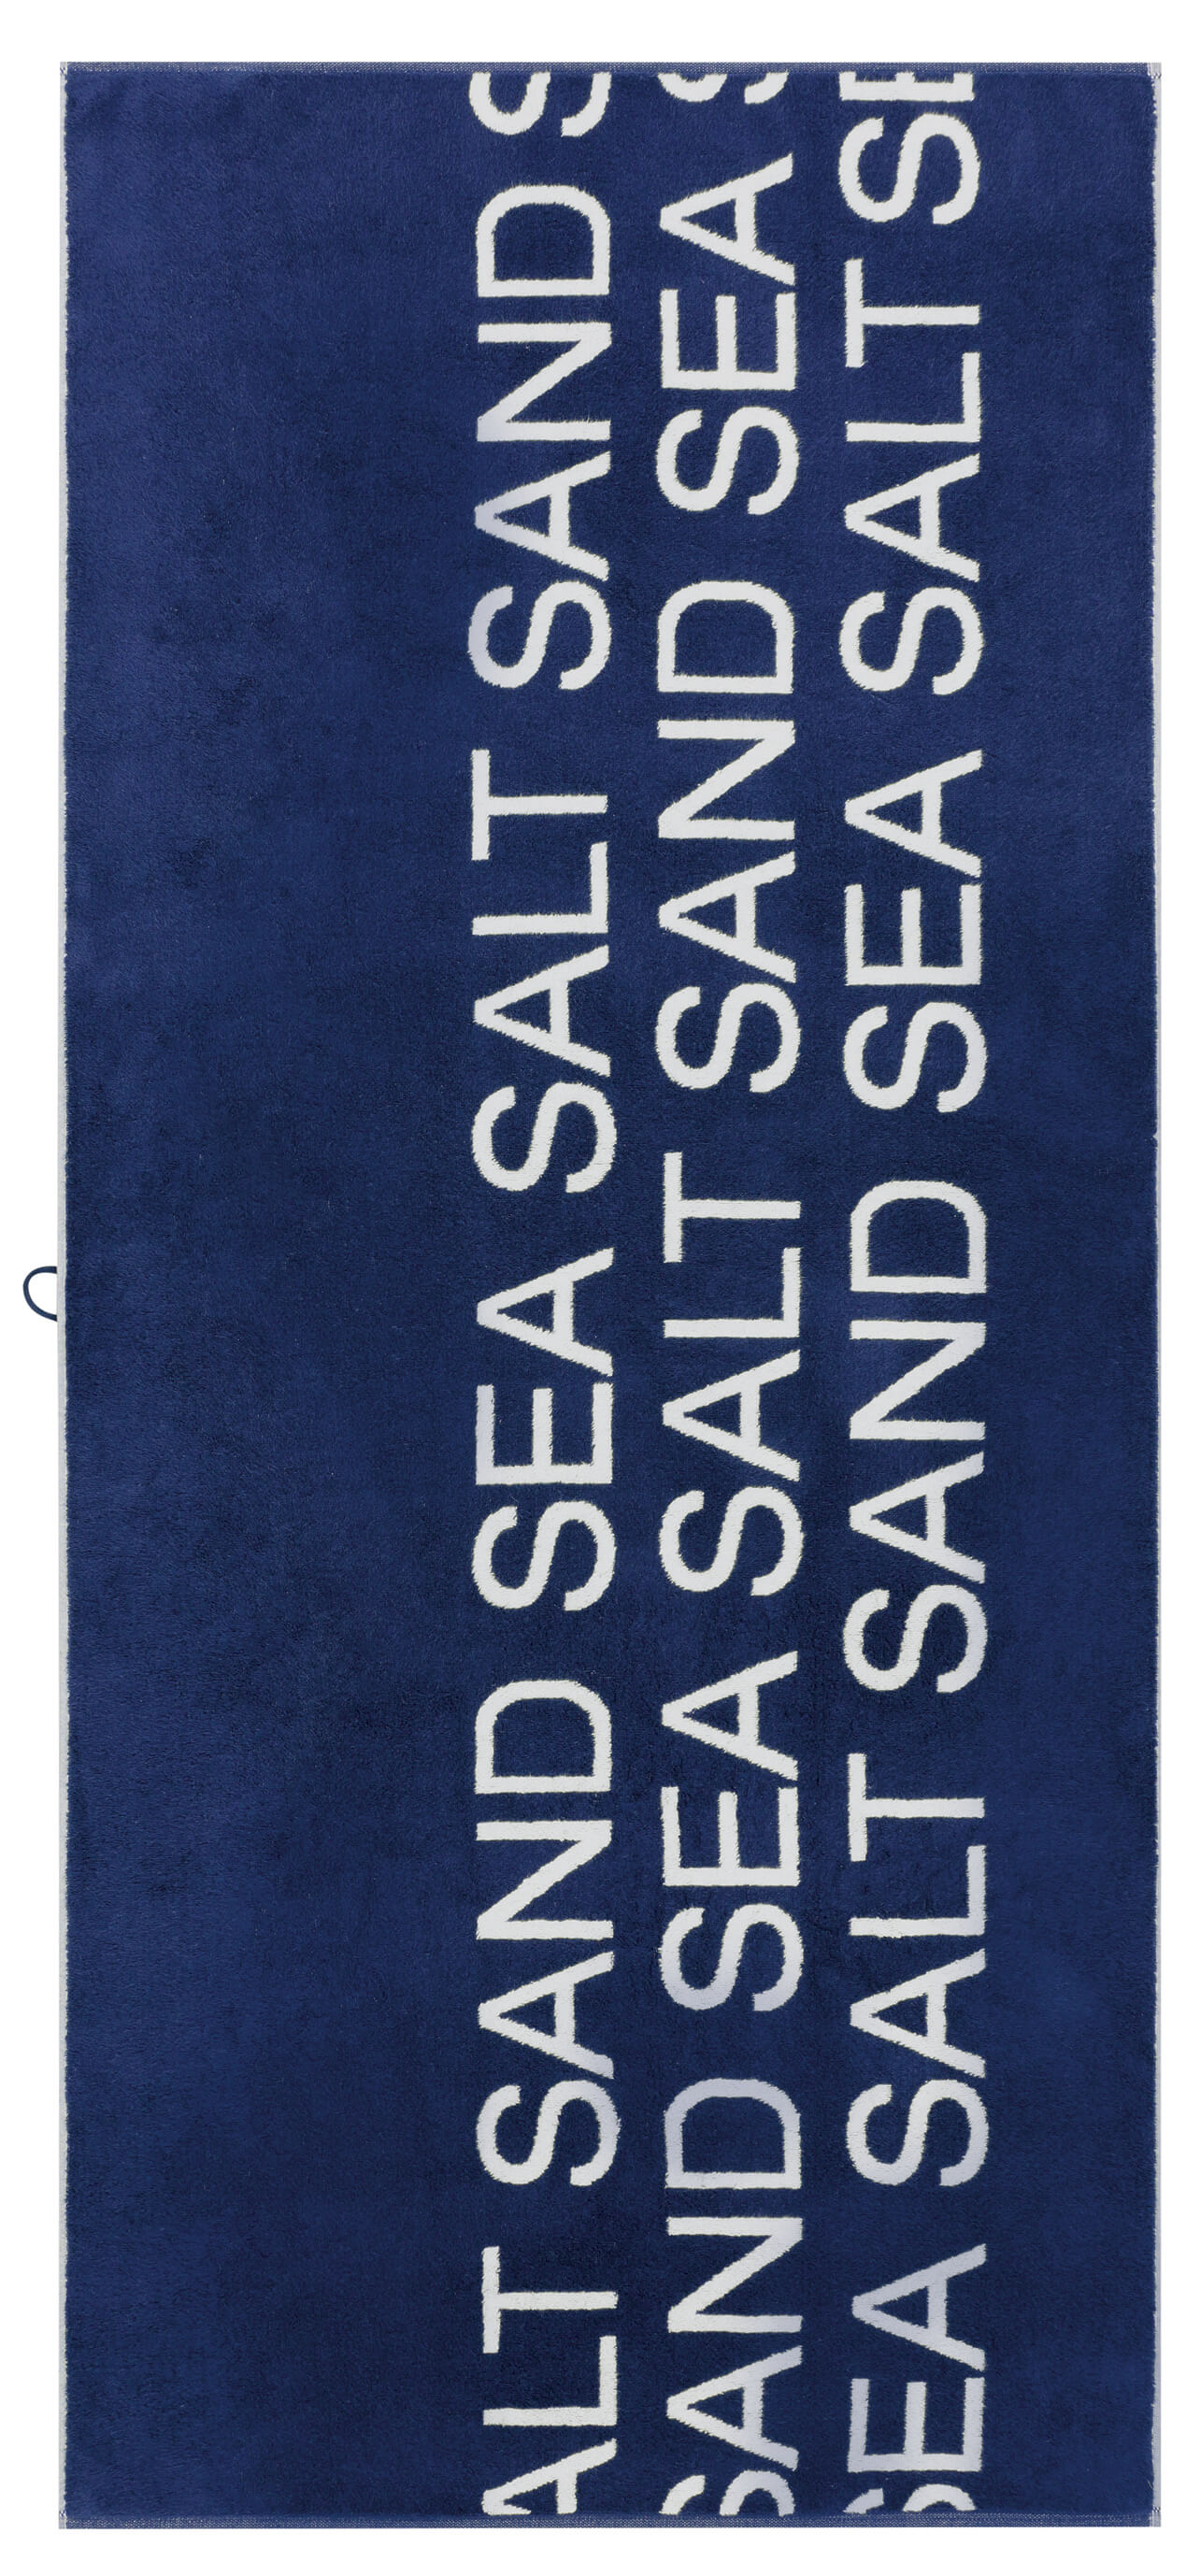 Полотенце для пляжа Sea Salt Sand Typo (442-16)